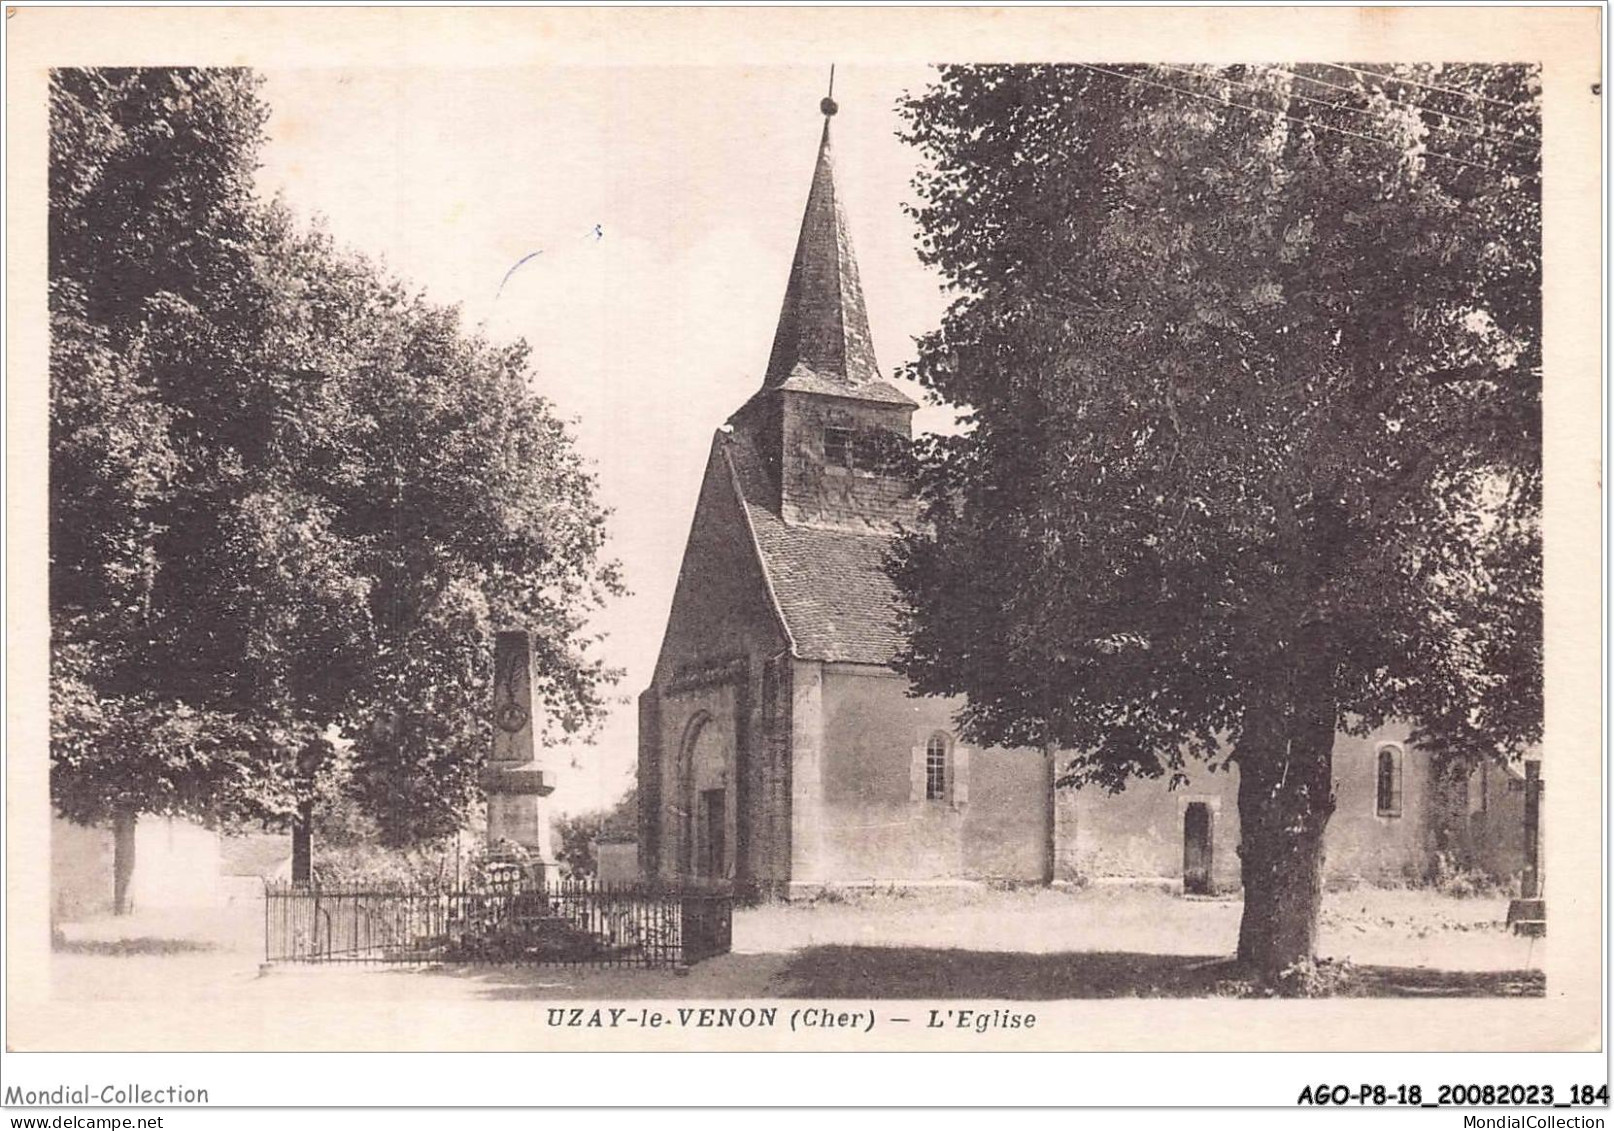 AGOP8-0749-18 - UZAY-LE-VENON - Cher - L'église - Saint-Amand-Montrond